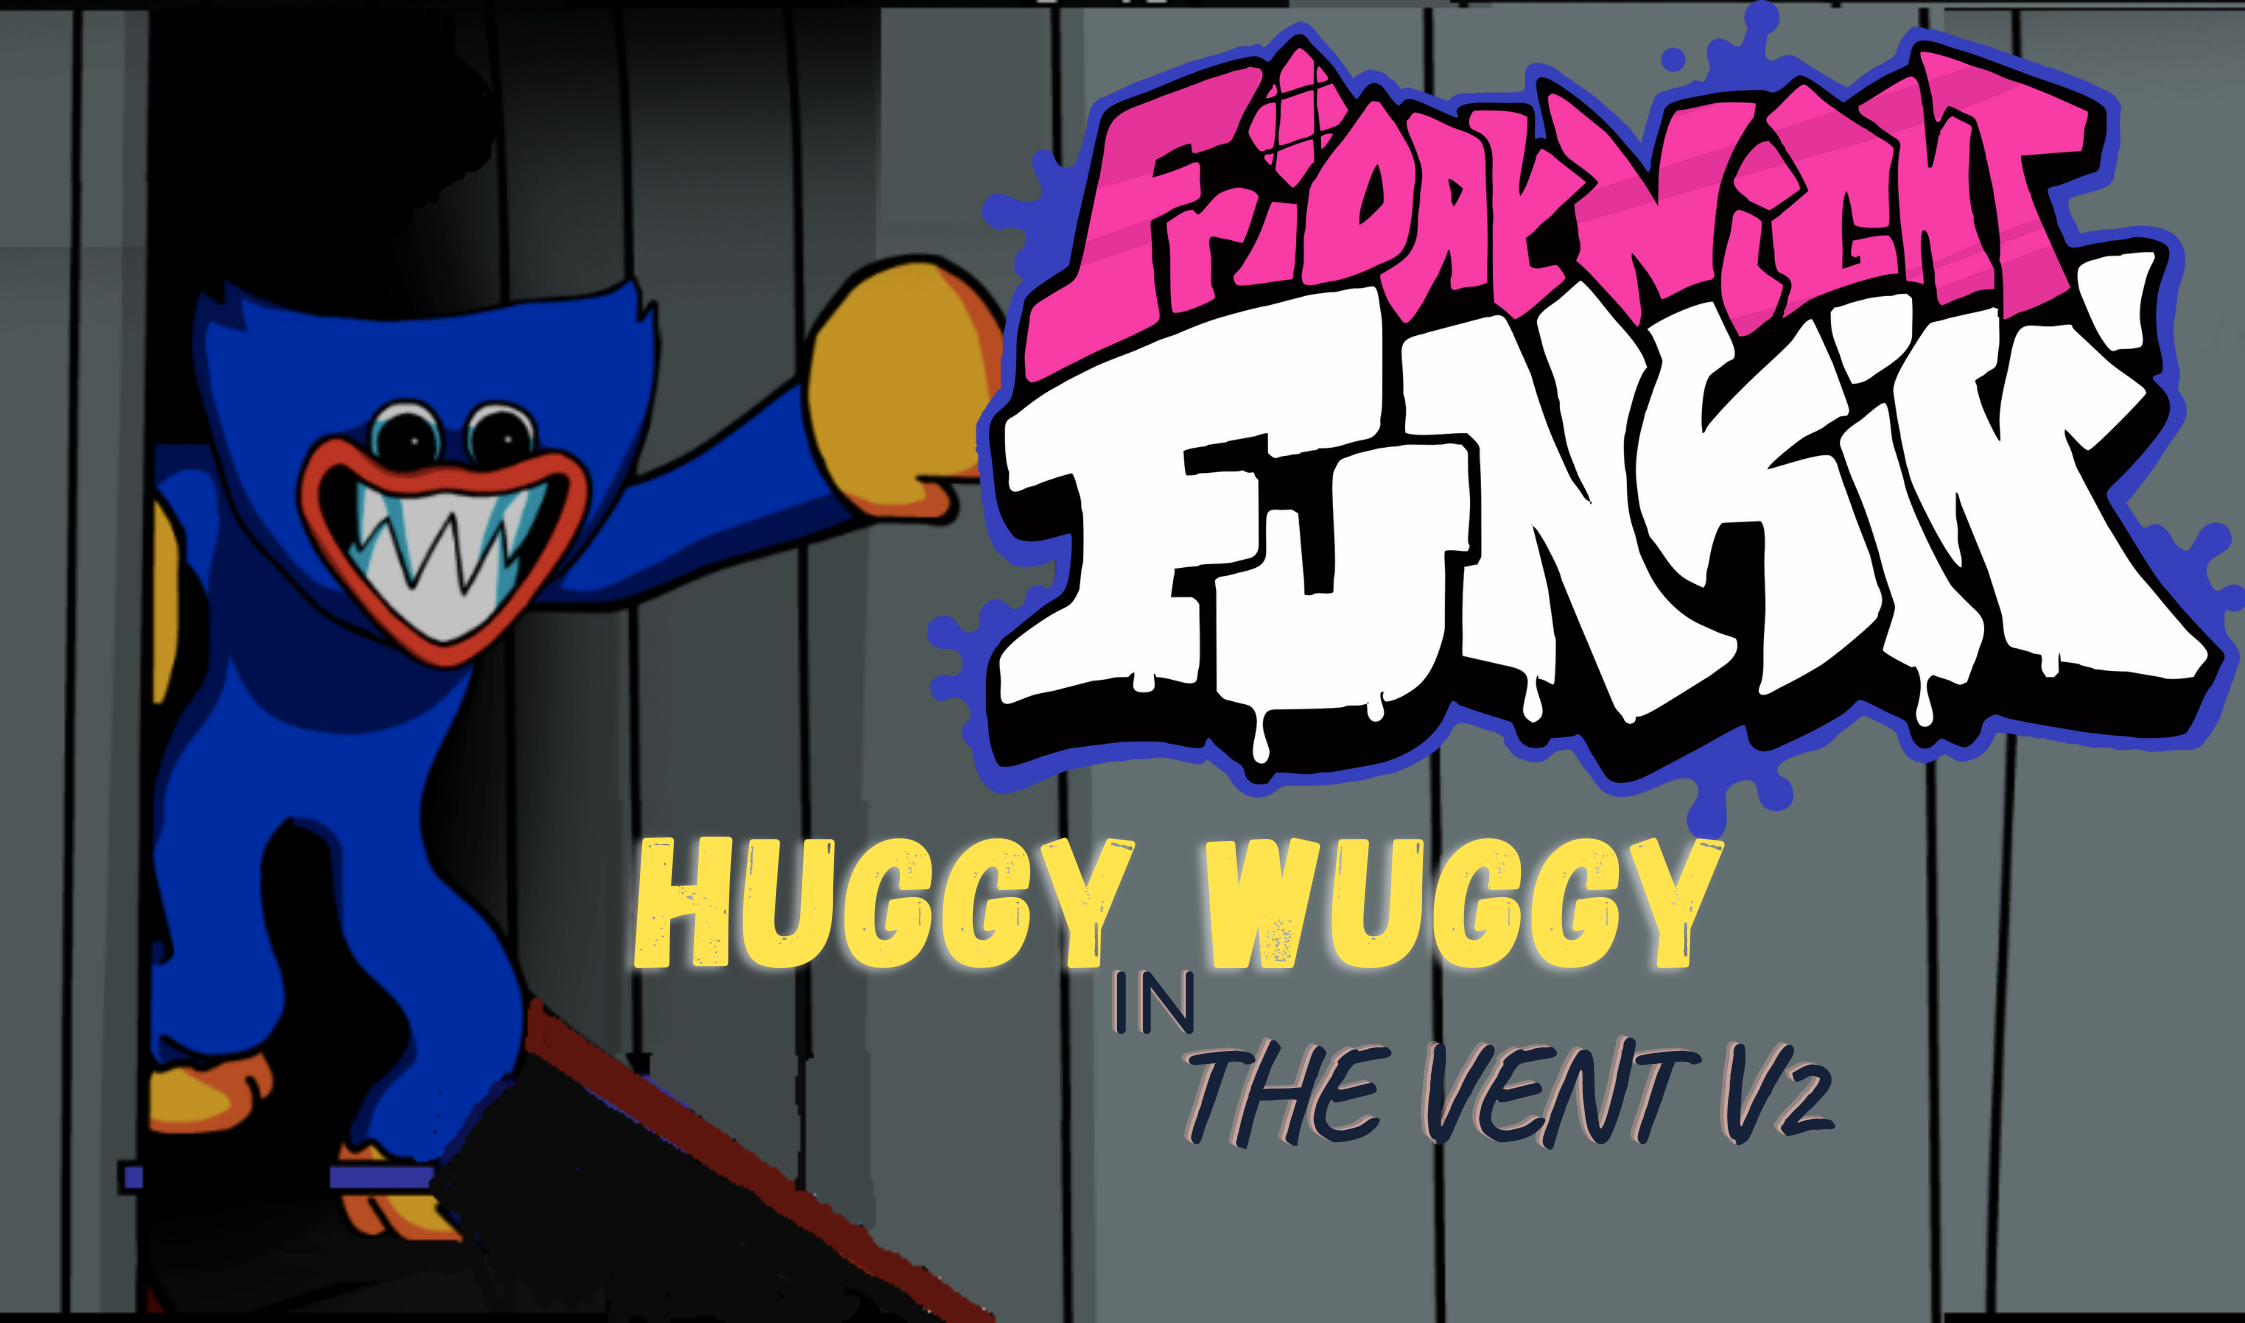 Fnf vs huggy wuggy